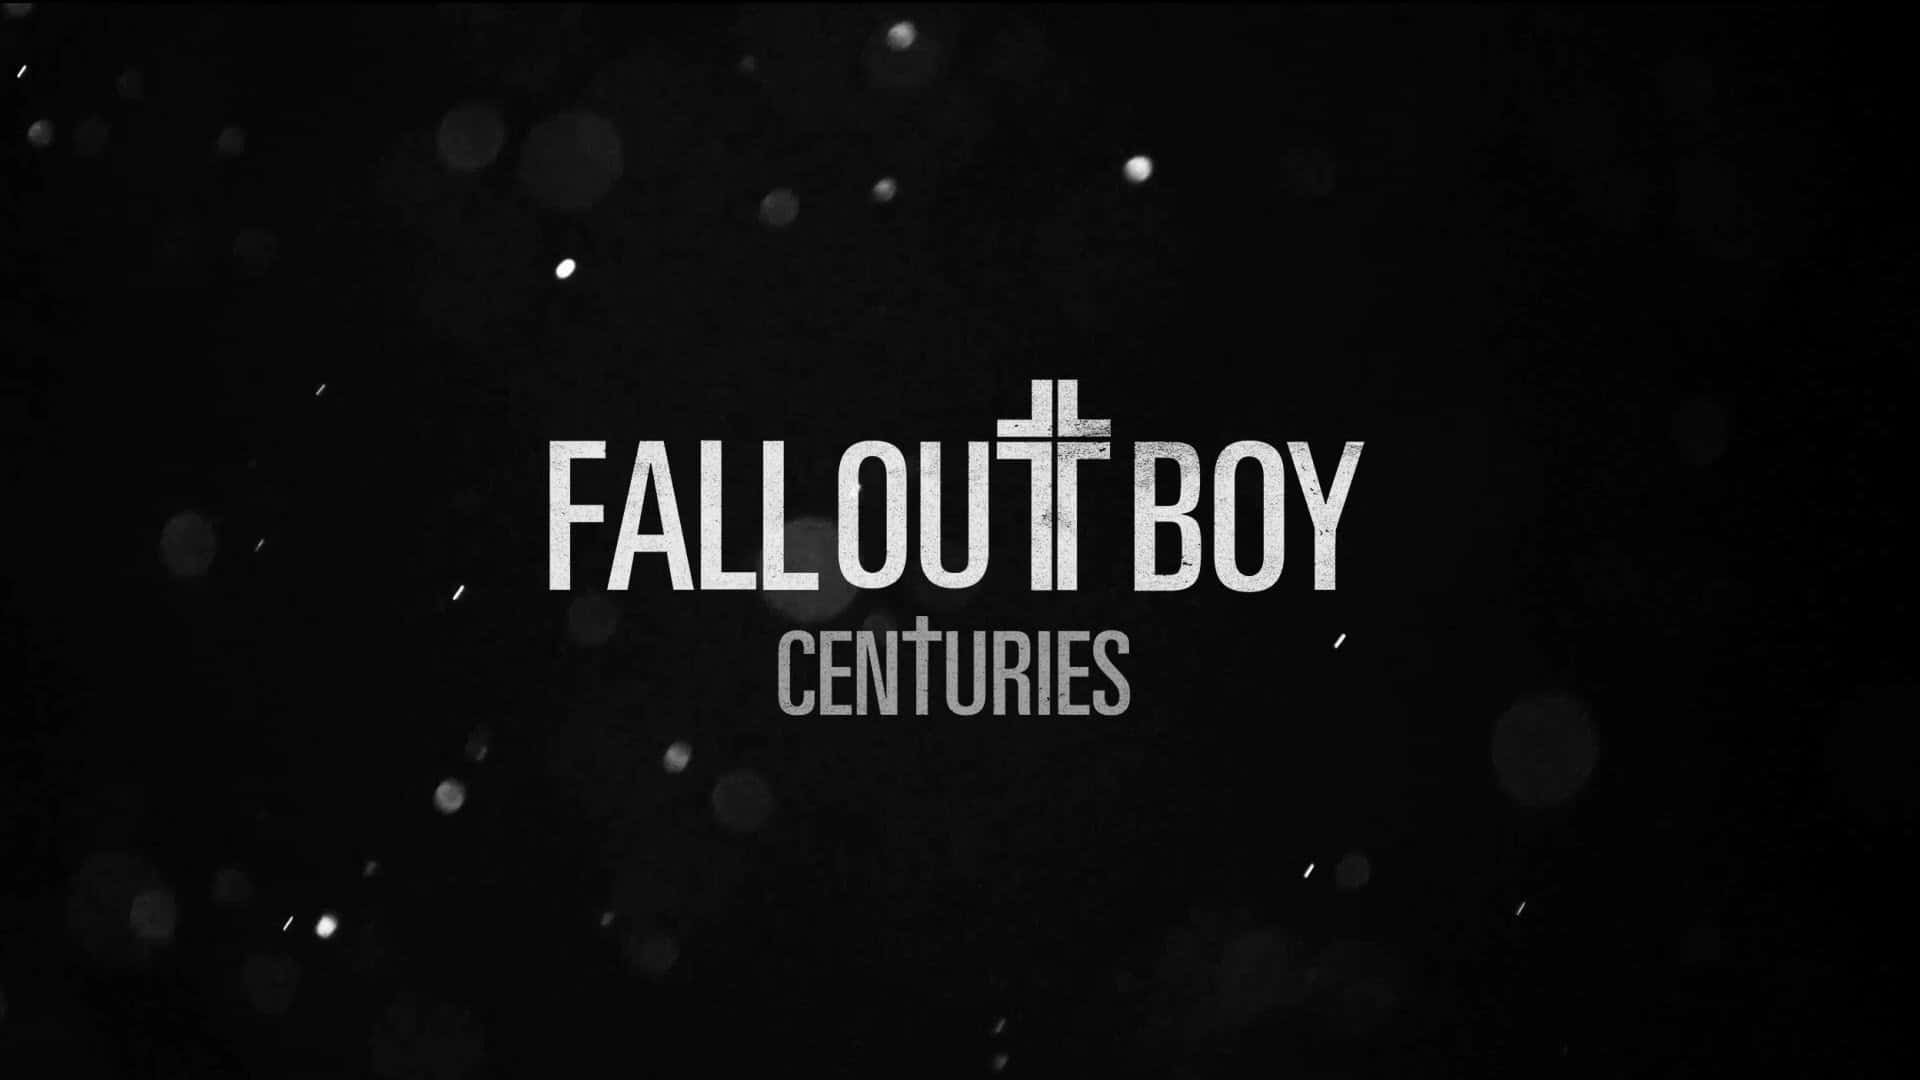 Fall Out Boy - "Centuries" Wallpaper